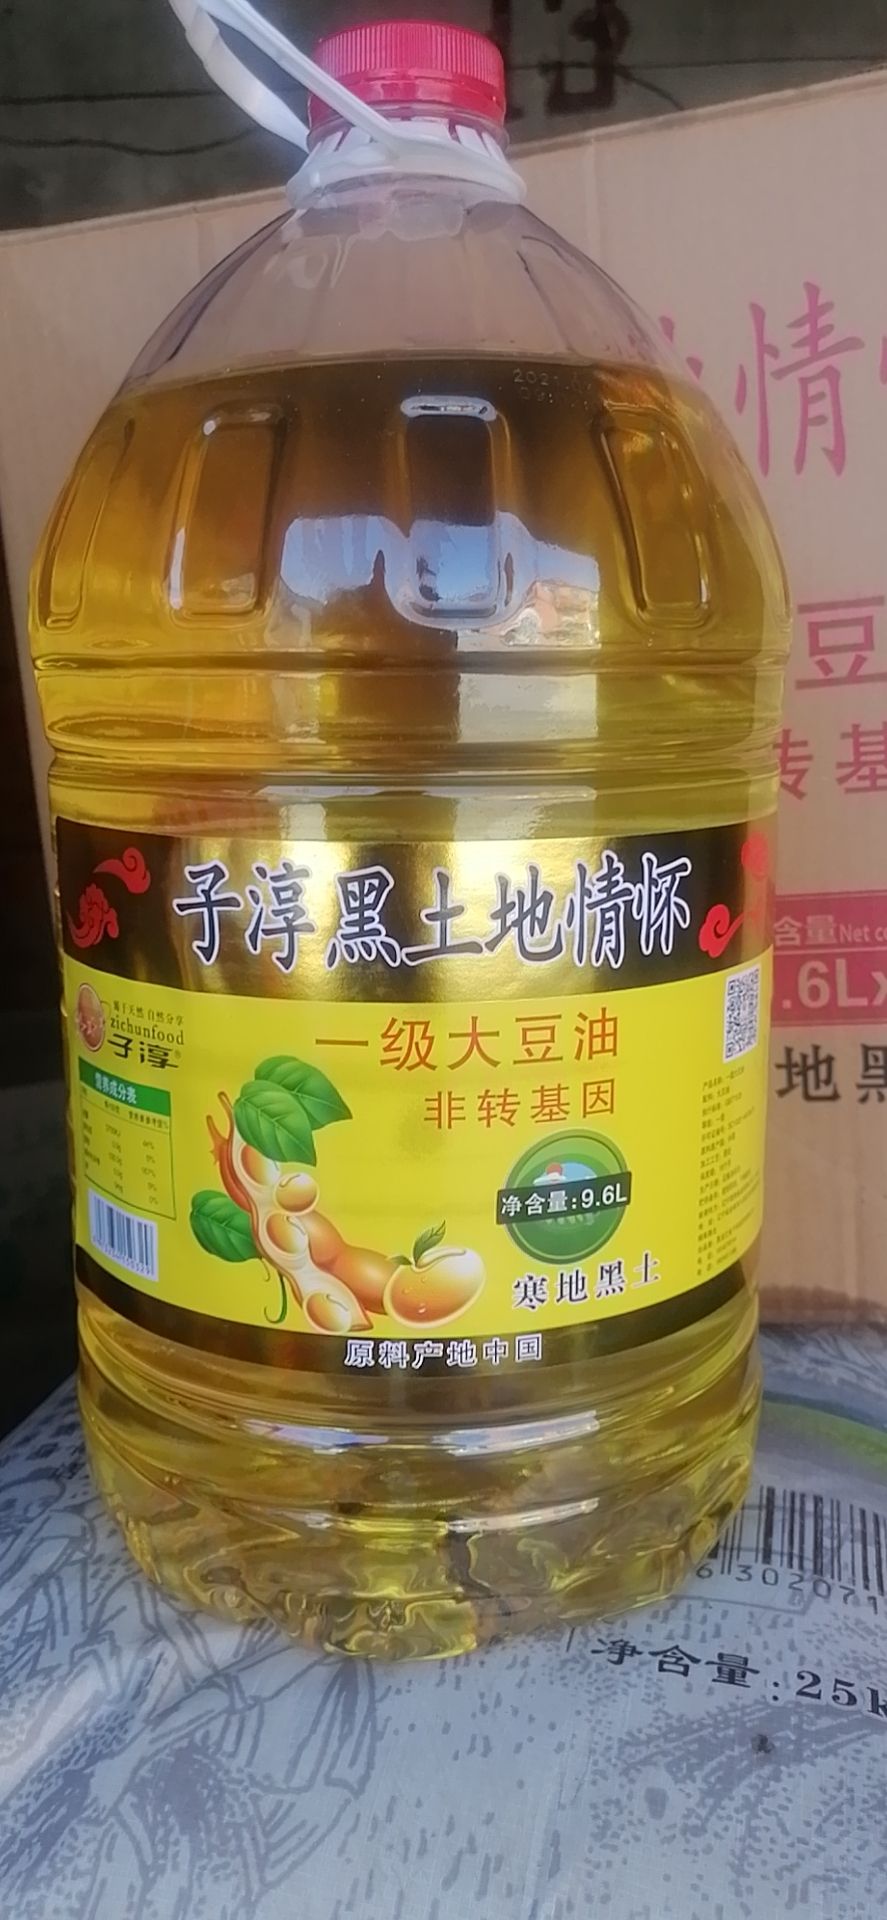 哈尔滨东北特产非转基因豆油全国招商可以代发货快递提供云仓